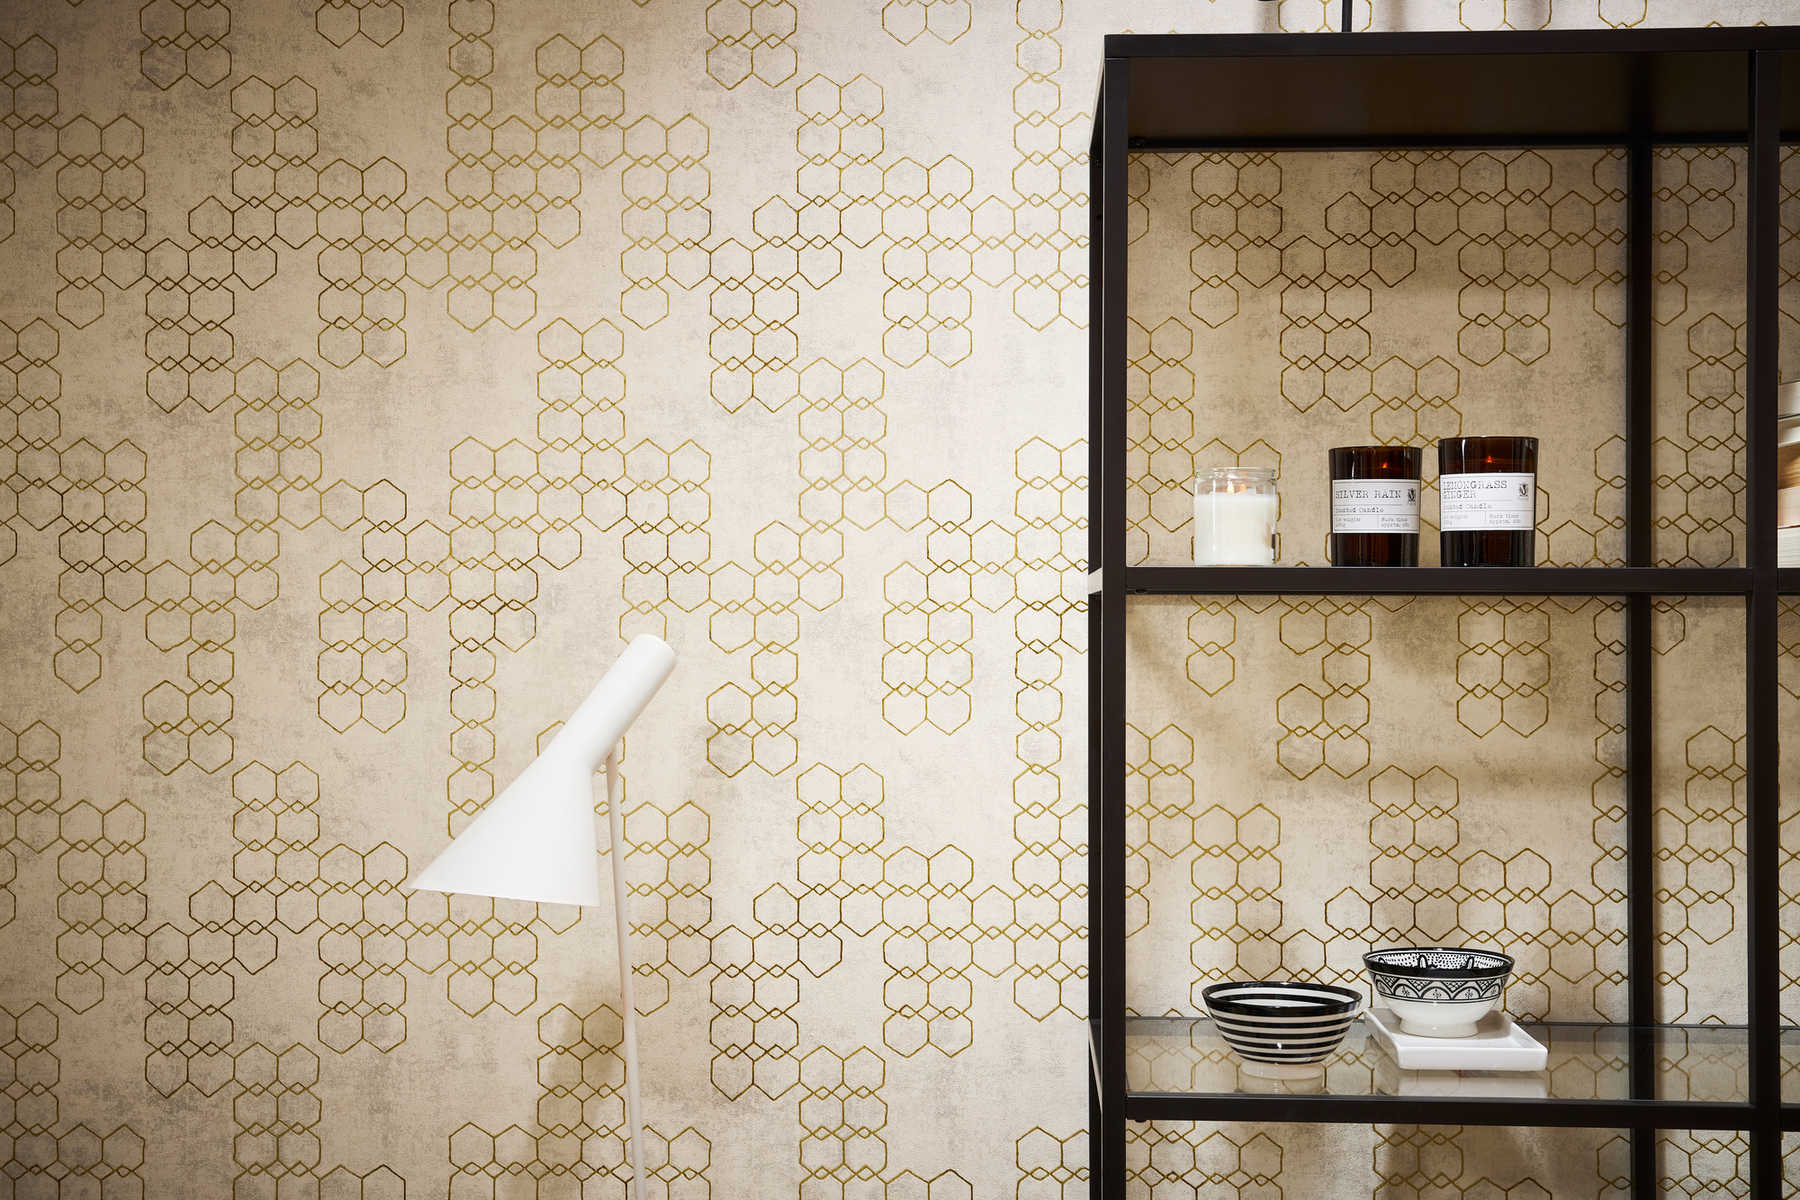             Geometrisch patroonbehang in industriële stijl - crème, goud, grijs
        